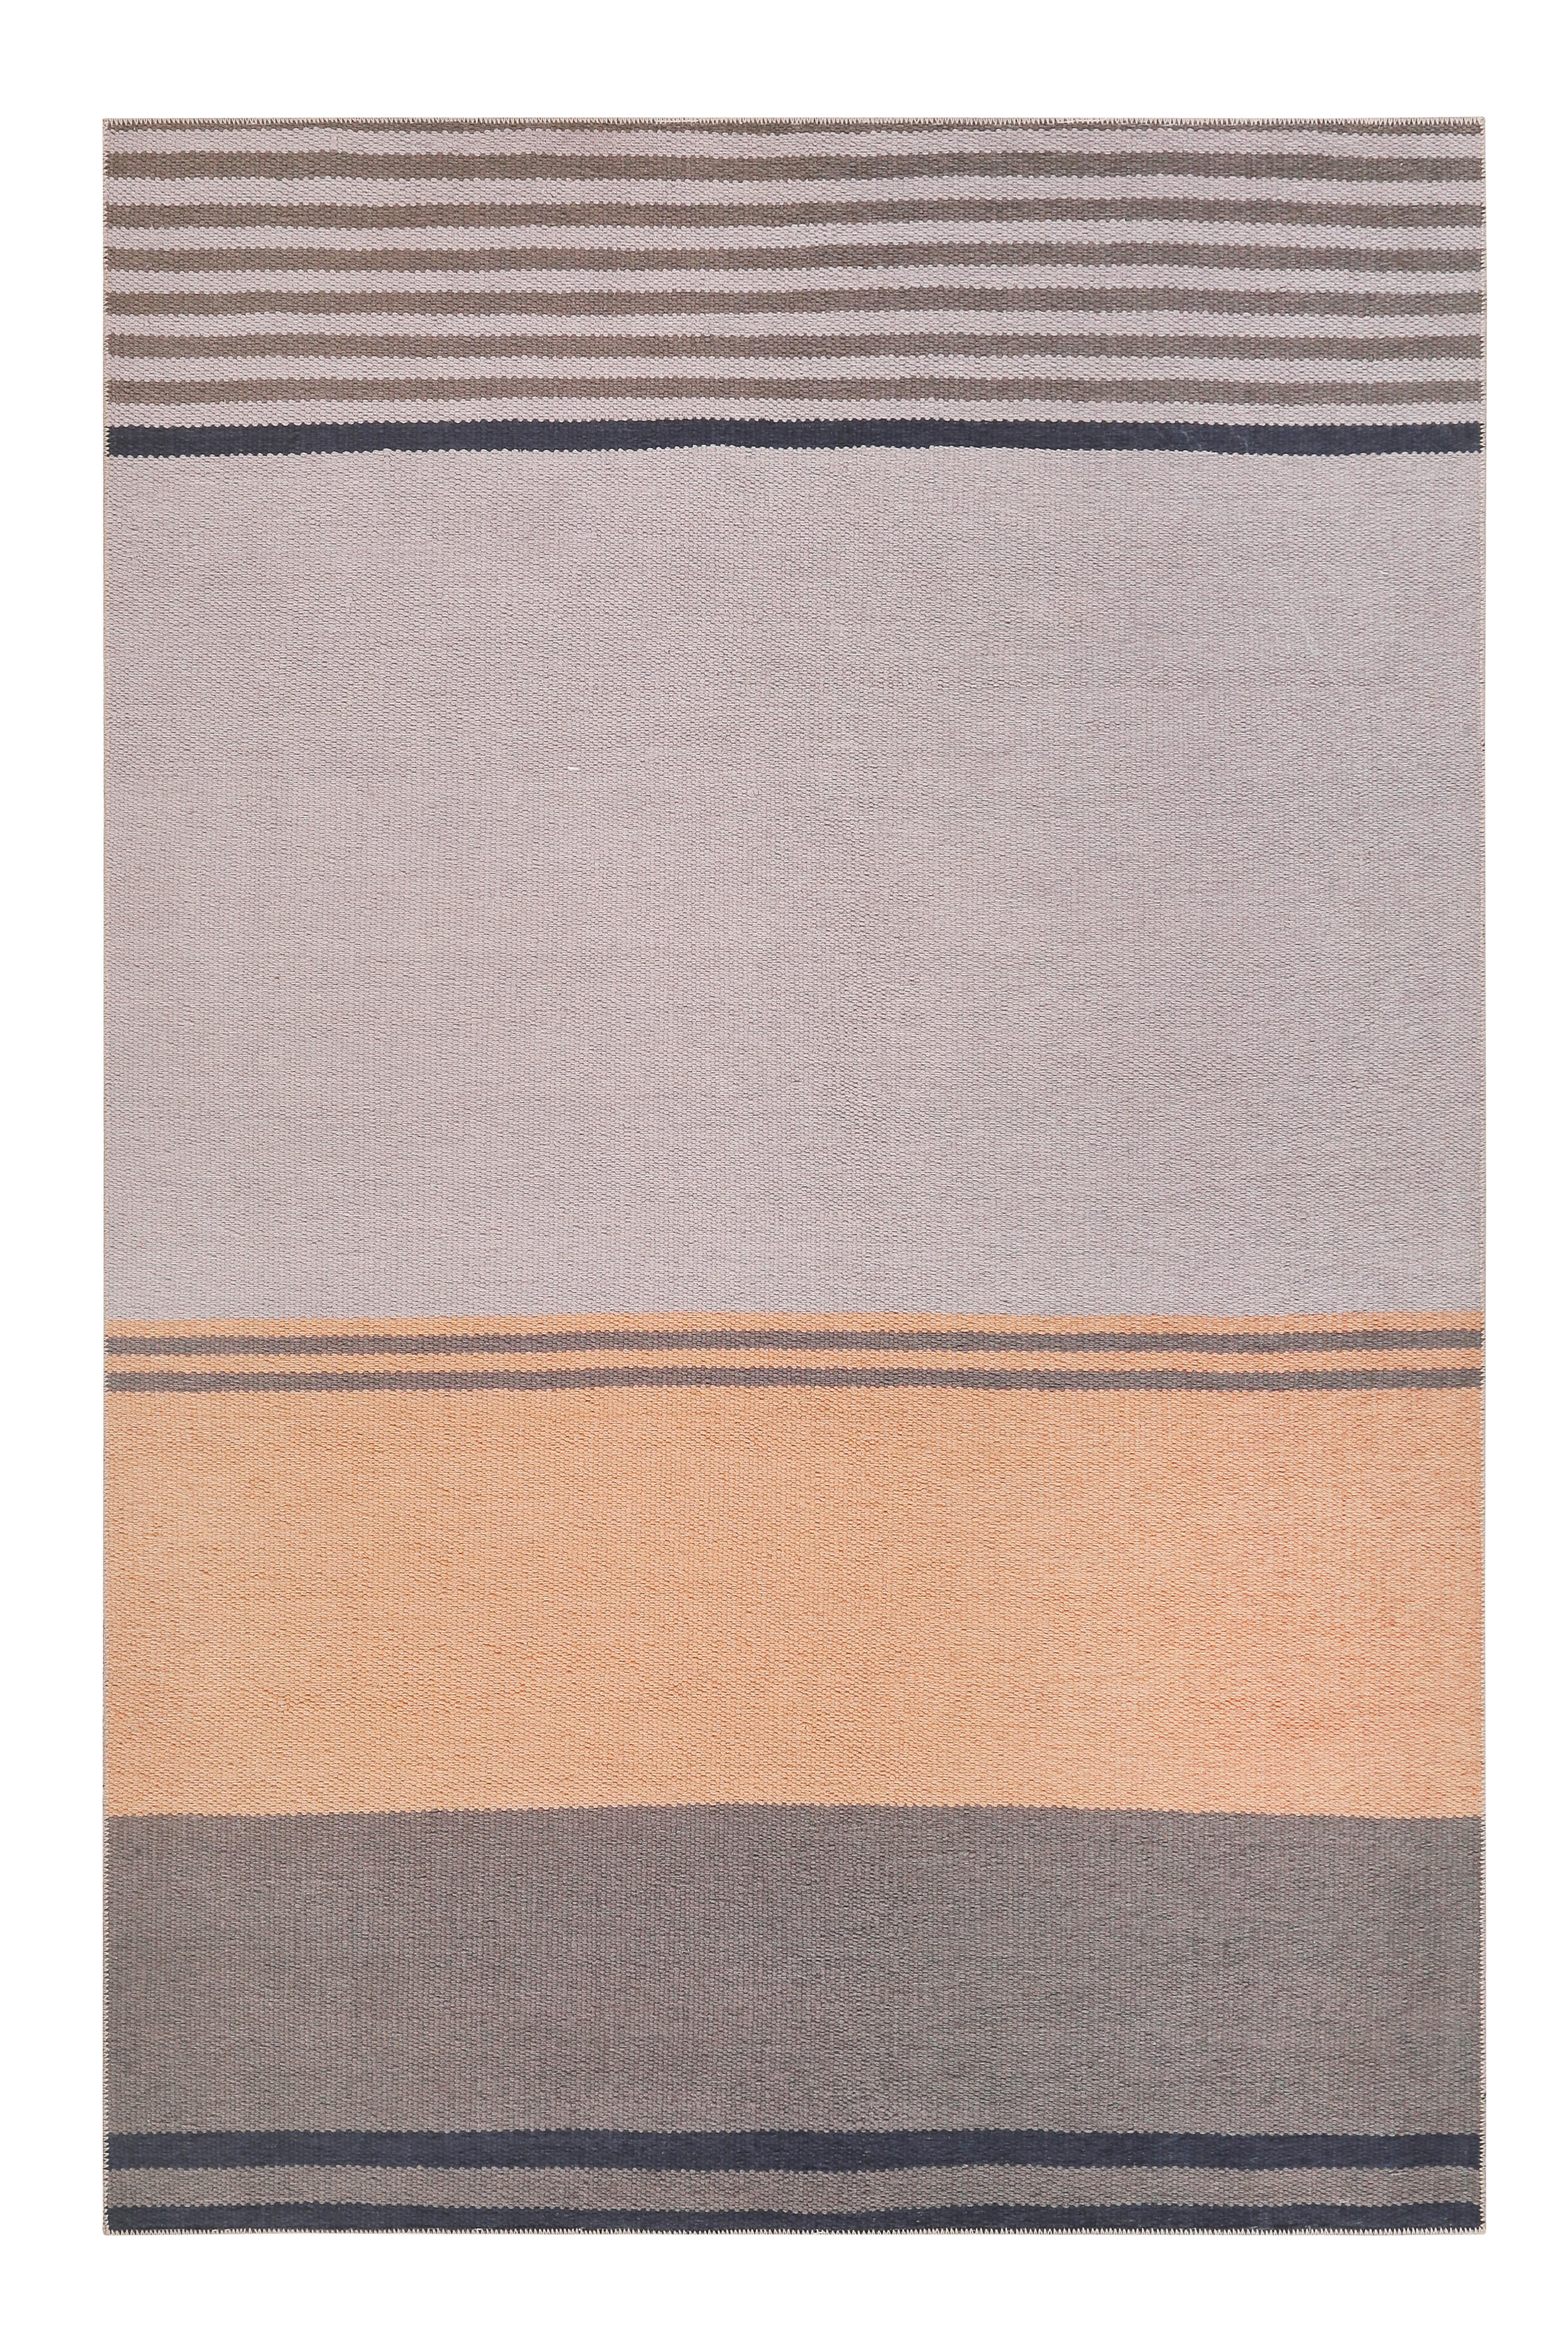 Esprit KOBEREC TKANÝ NA PLOCHO, 160/230 cm, hnědá, šedá, oranžová - hnědá,šedá, oranžová - textil